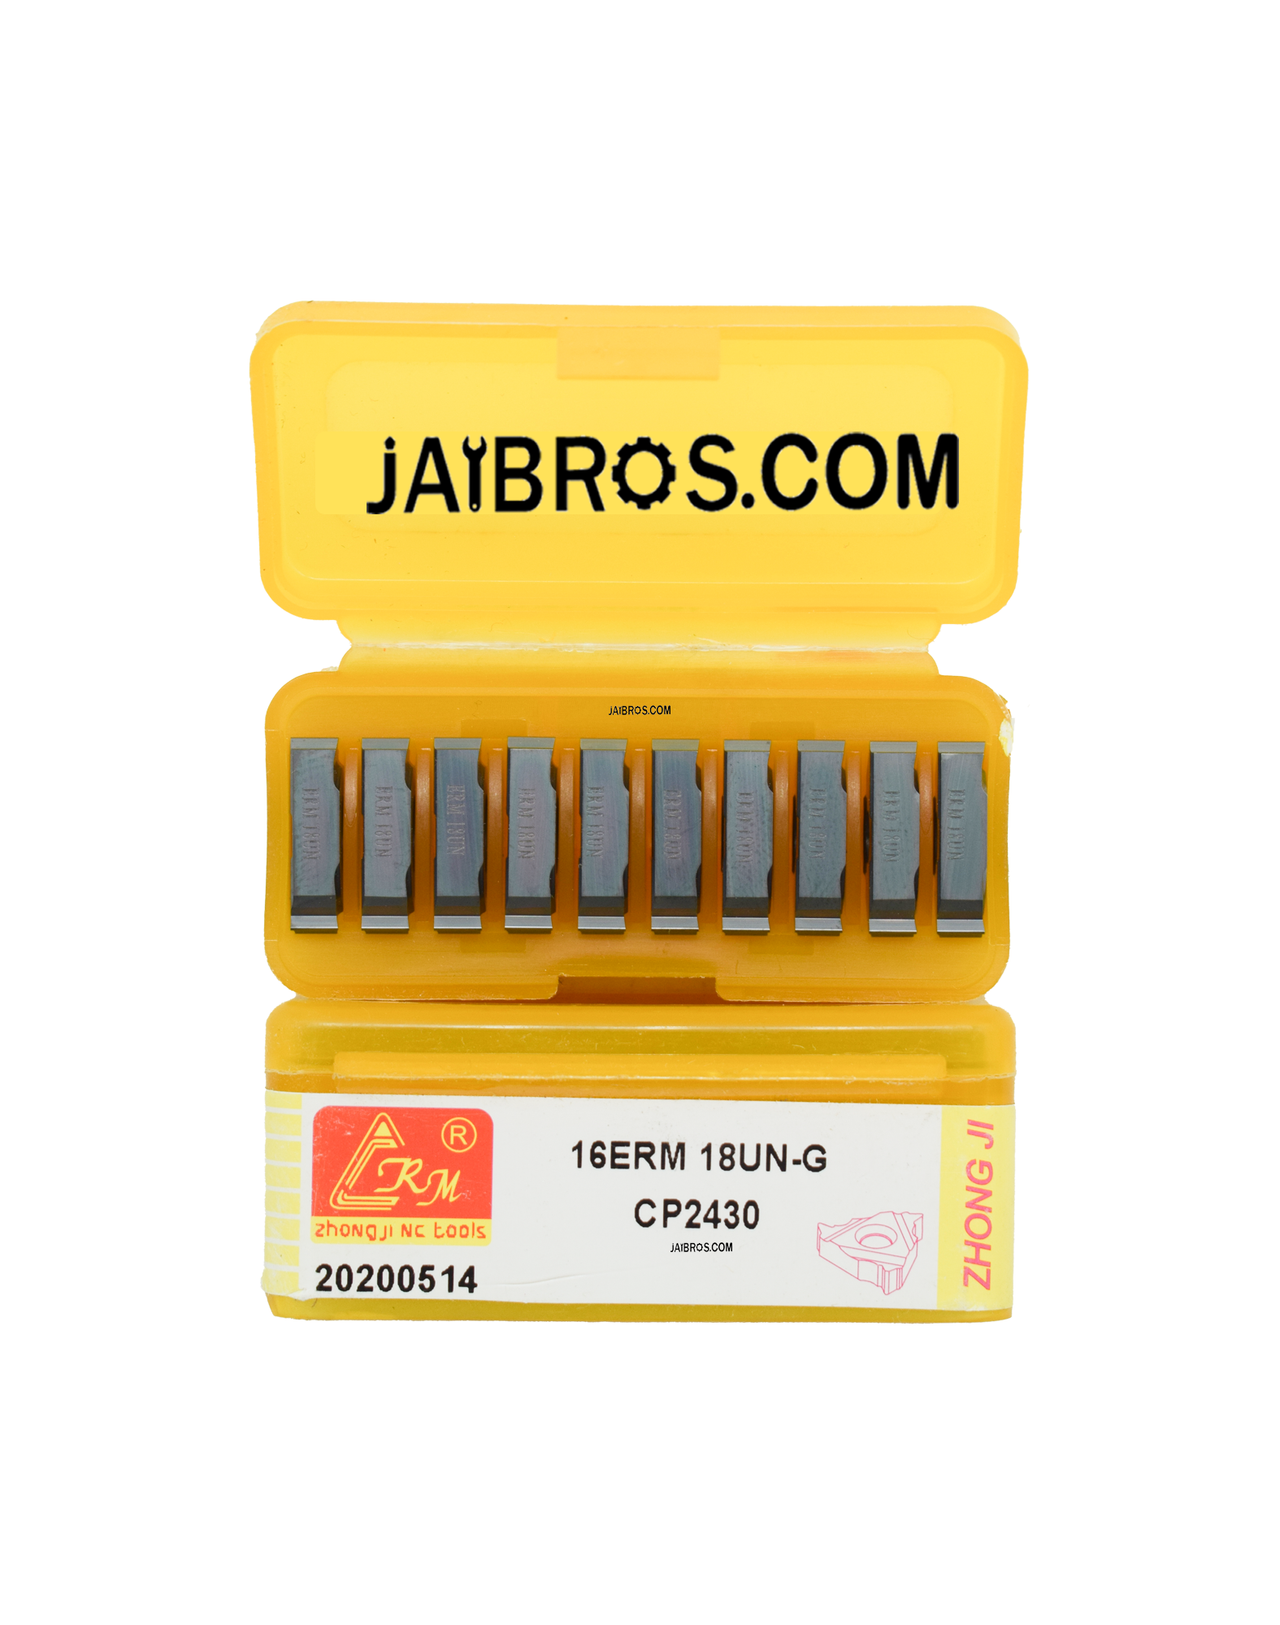 16 ER/IR 18UN External/Internal Threading CRM carbide Insert pack of 10